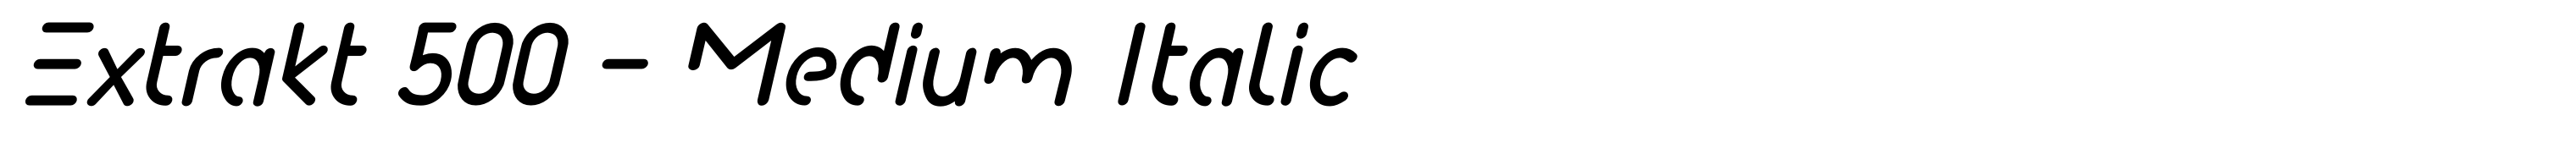 Extrakt 500 - Medium Italic